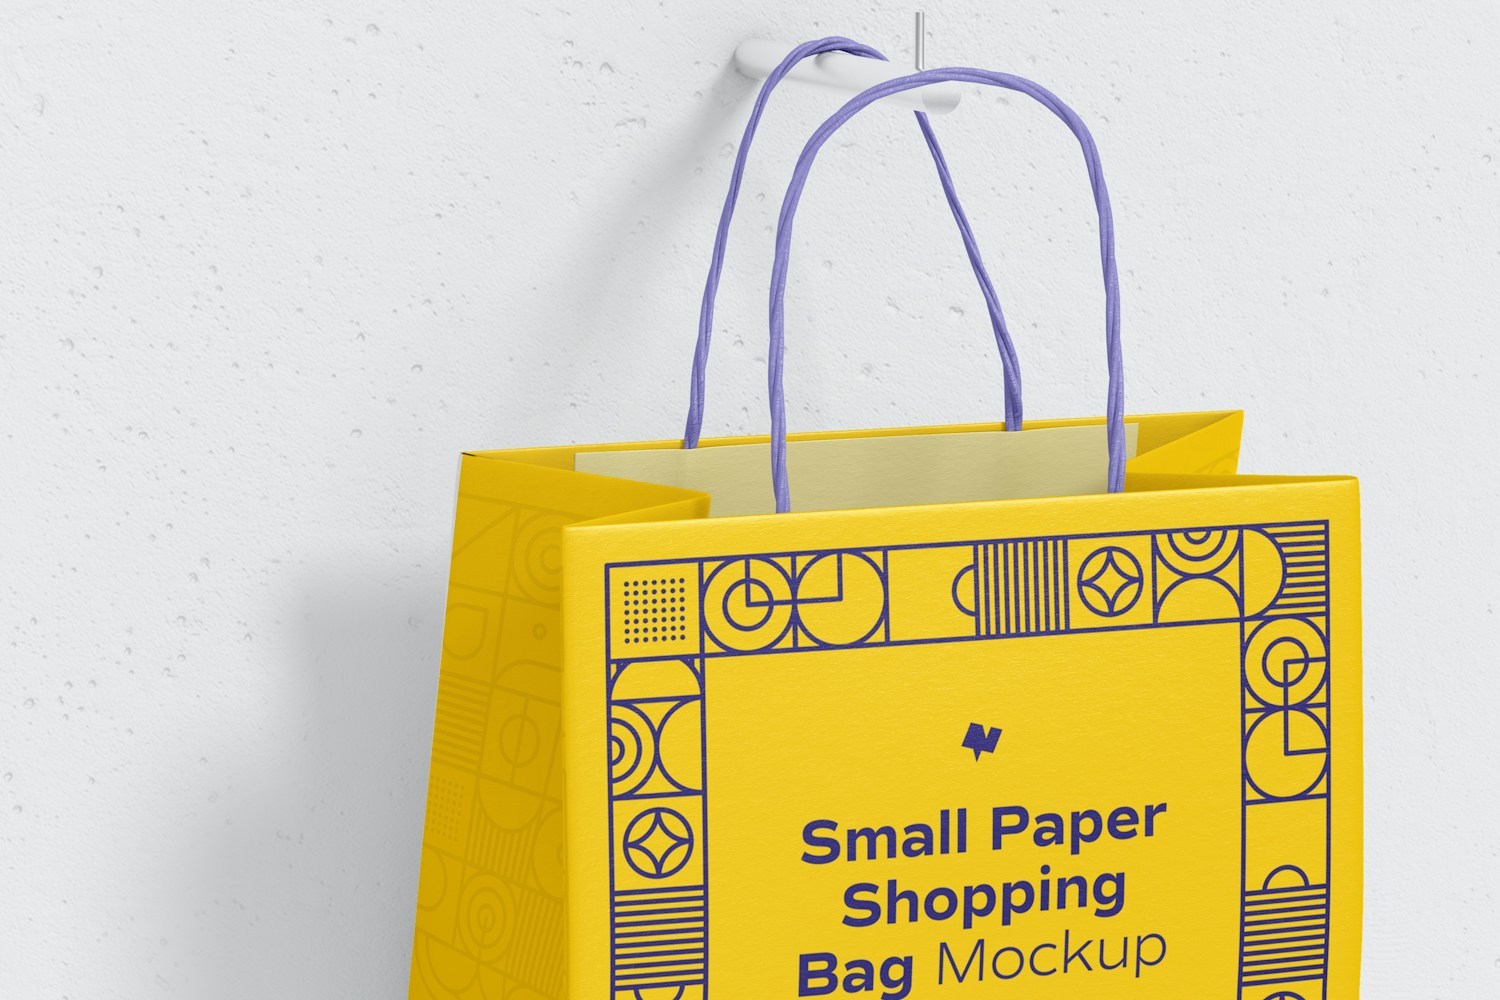 Small Paper Shopping Bag Mockup, Hanging